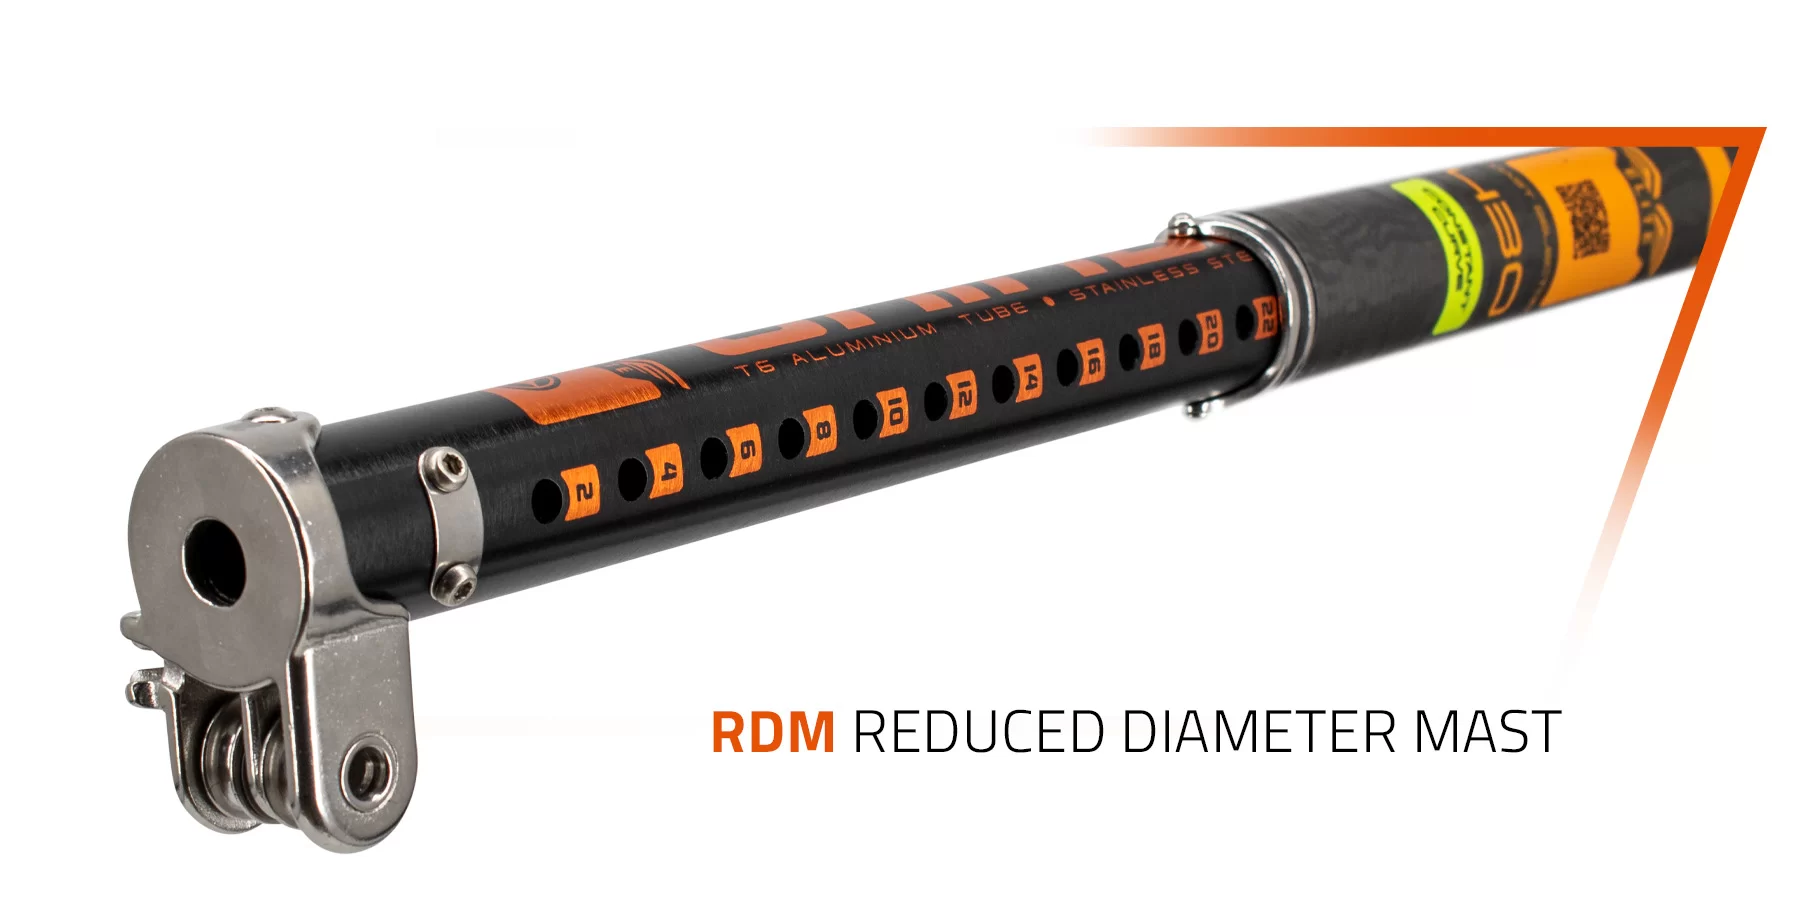  RDM - Reduced Diameter Mast